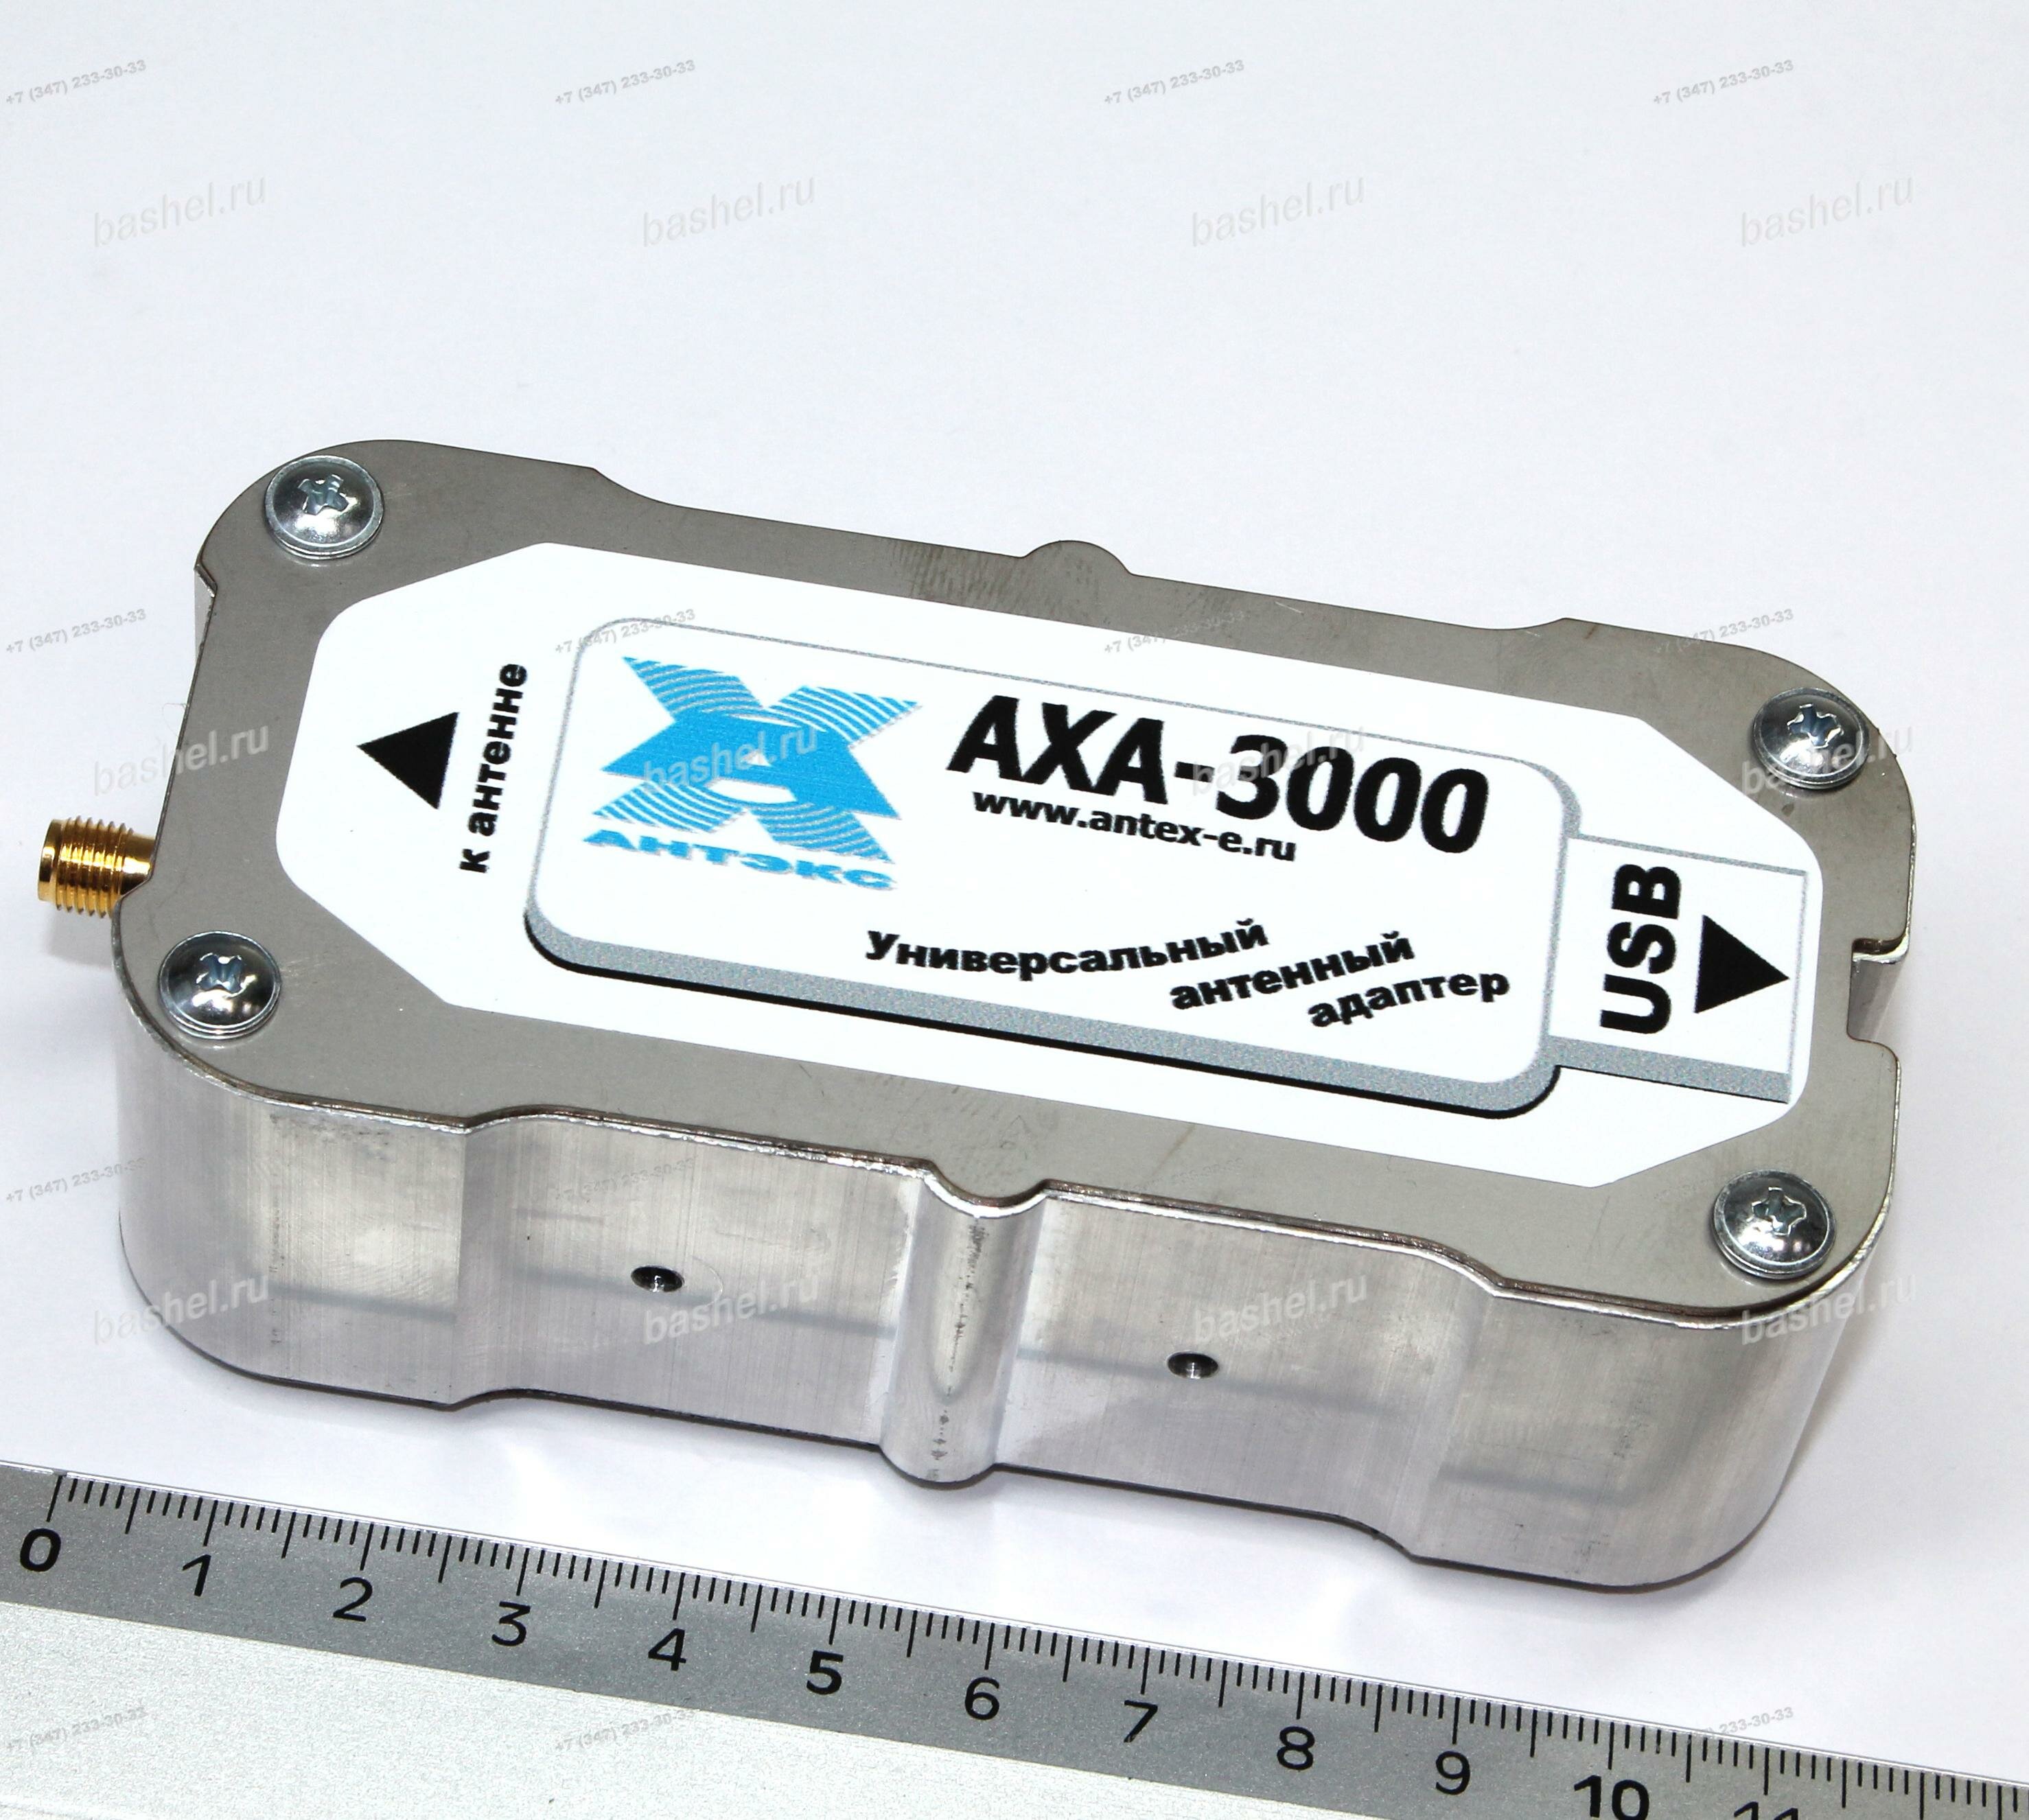 Переходник антенный универсальный (адаптер) AXA-3000 для 3G, 4G модемов, Antex электротовар